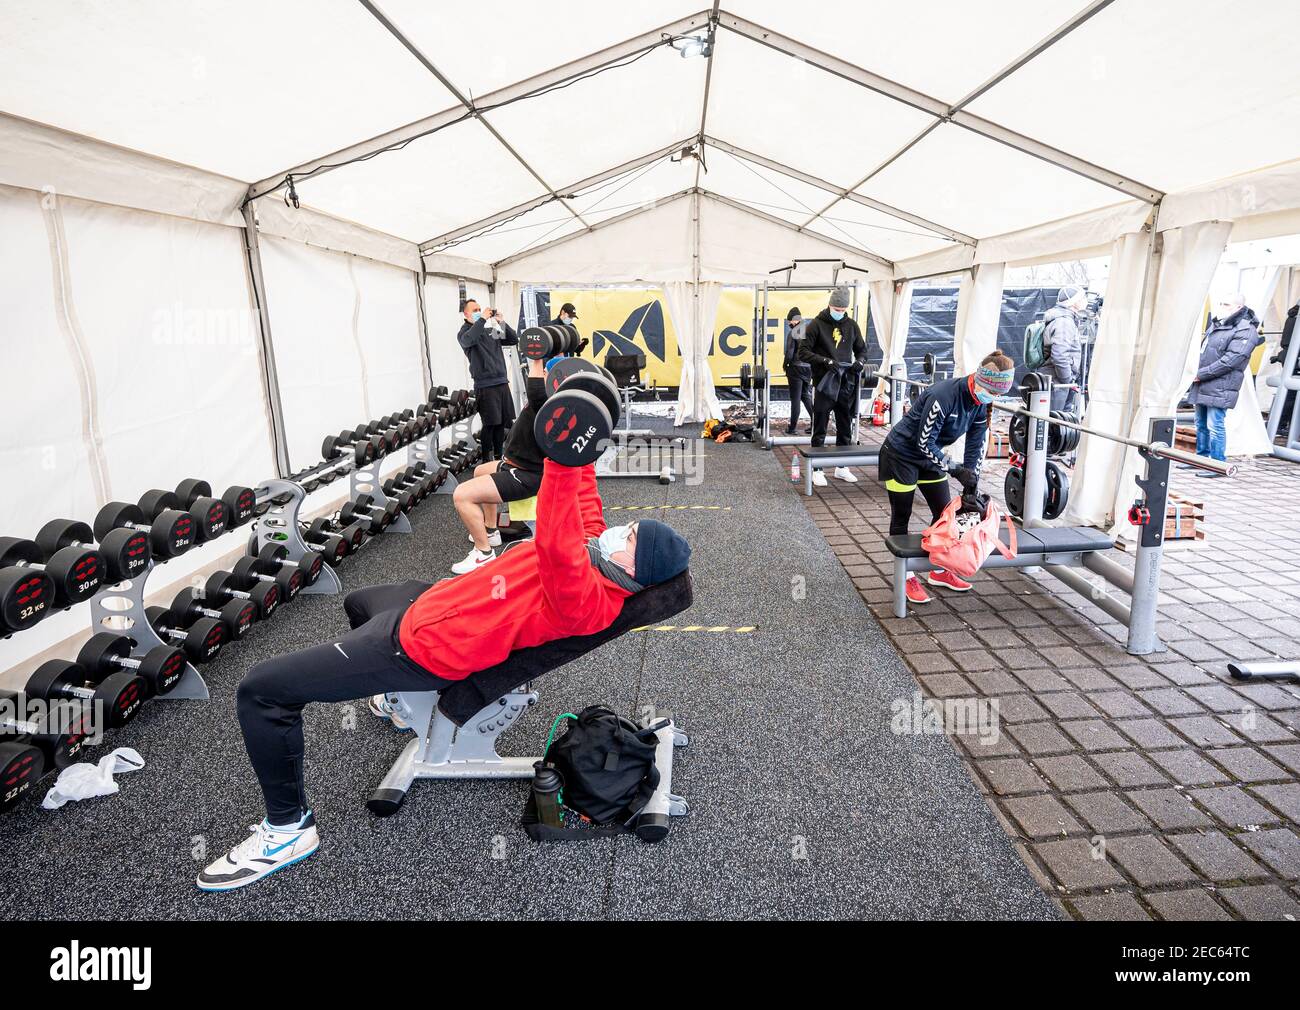 Berlin, Allemagne. 13 février 2021. Plusieurs personnes s'entraîner dans  une tente à l'extérieur d'une salle de sport. Une chaîne de gym ouvre  plusieurs gymnases extérieurs avec un concept d'hygiène spécial même pendant